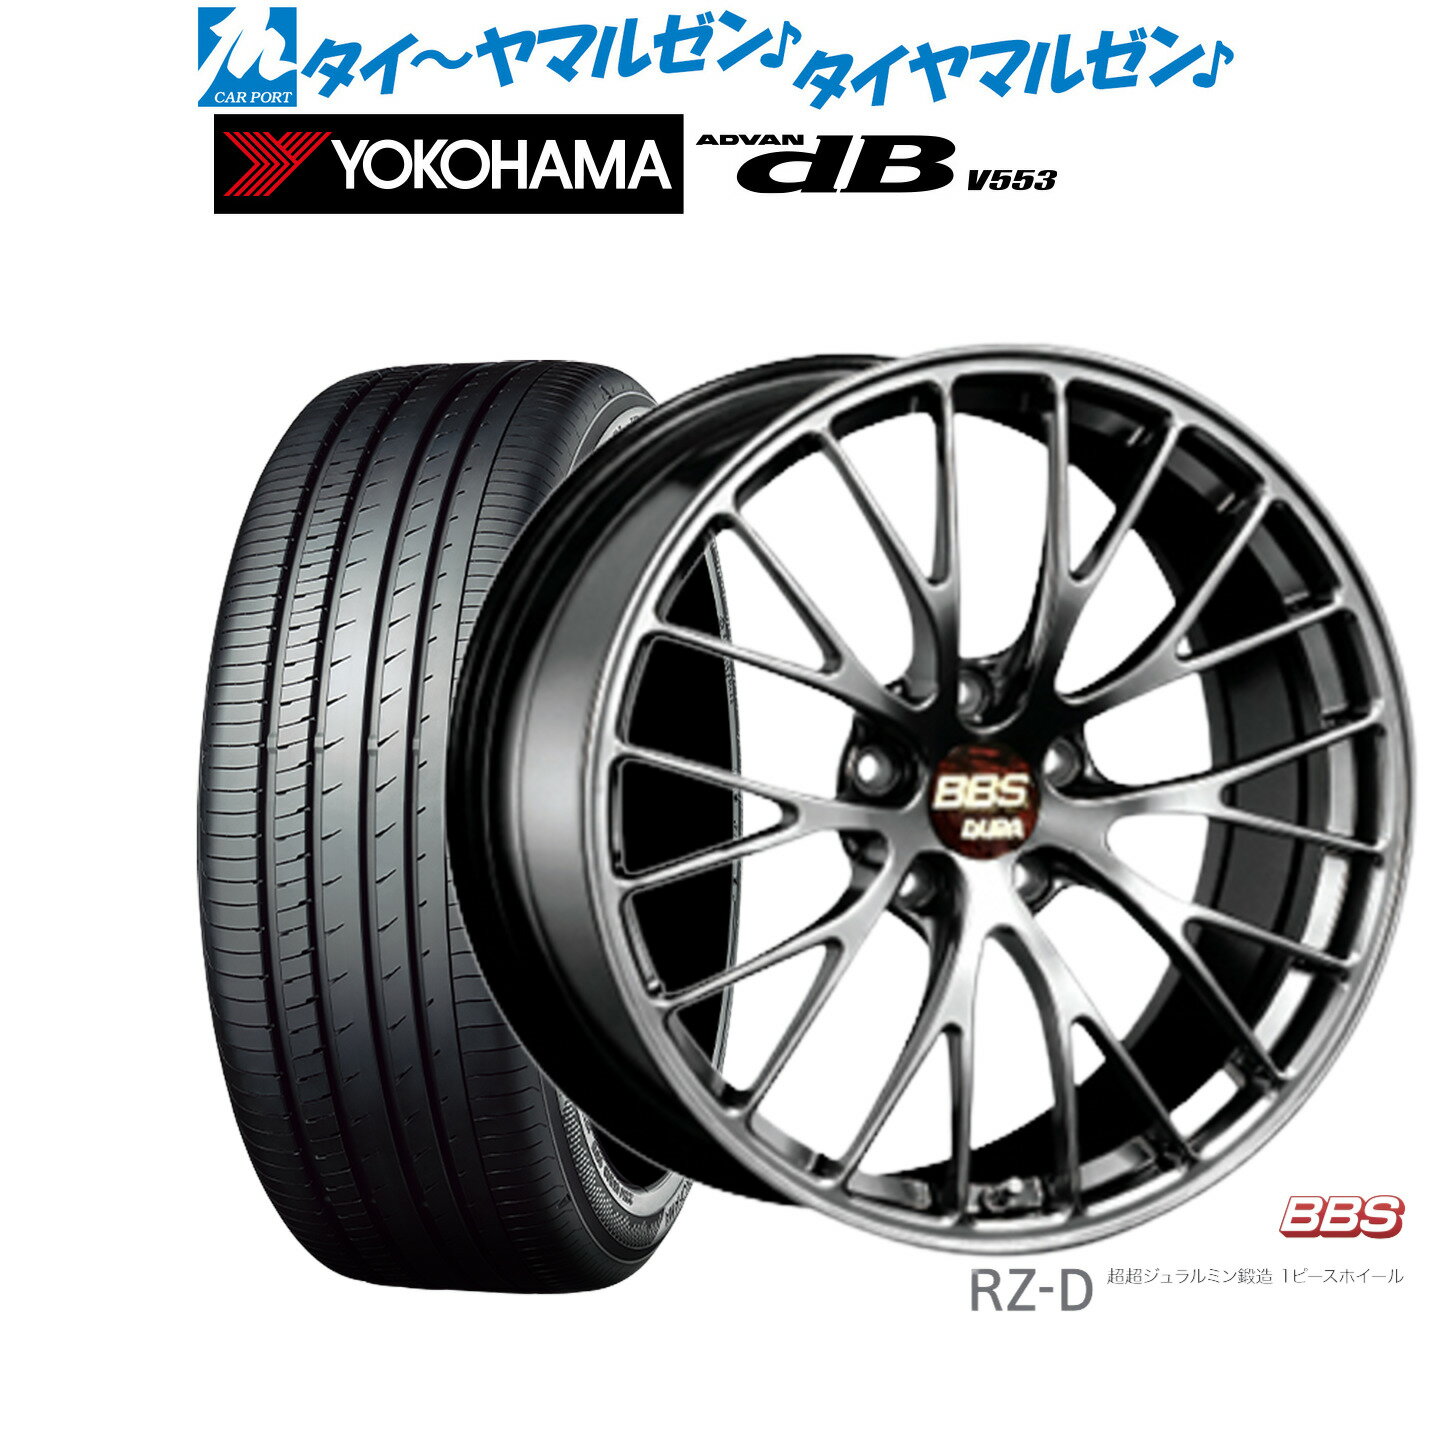 [5/9～15]割引クーポン配布新品 サマータイヤ ホイール4本セットBBS JAPAN RZ-D20インチ 8.5Jヨコハマ ADVAN アドバン dB(V553)245/40R20